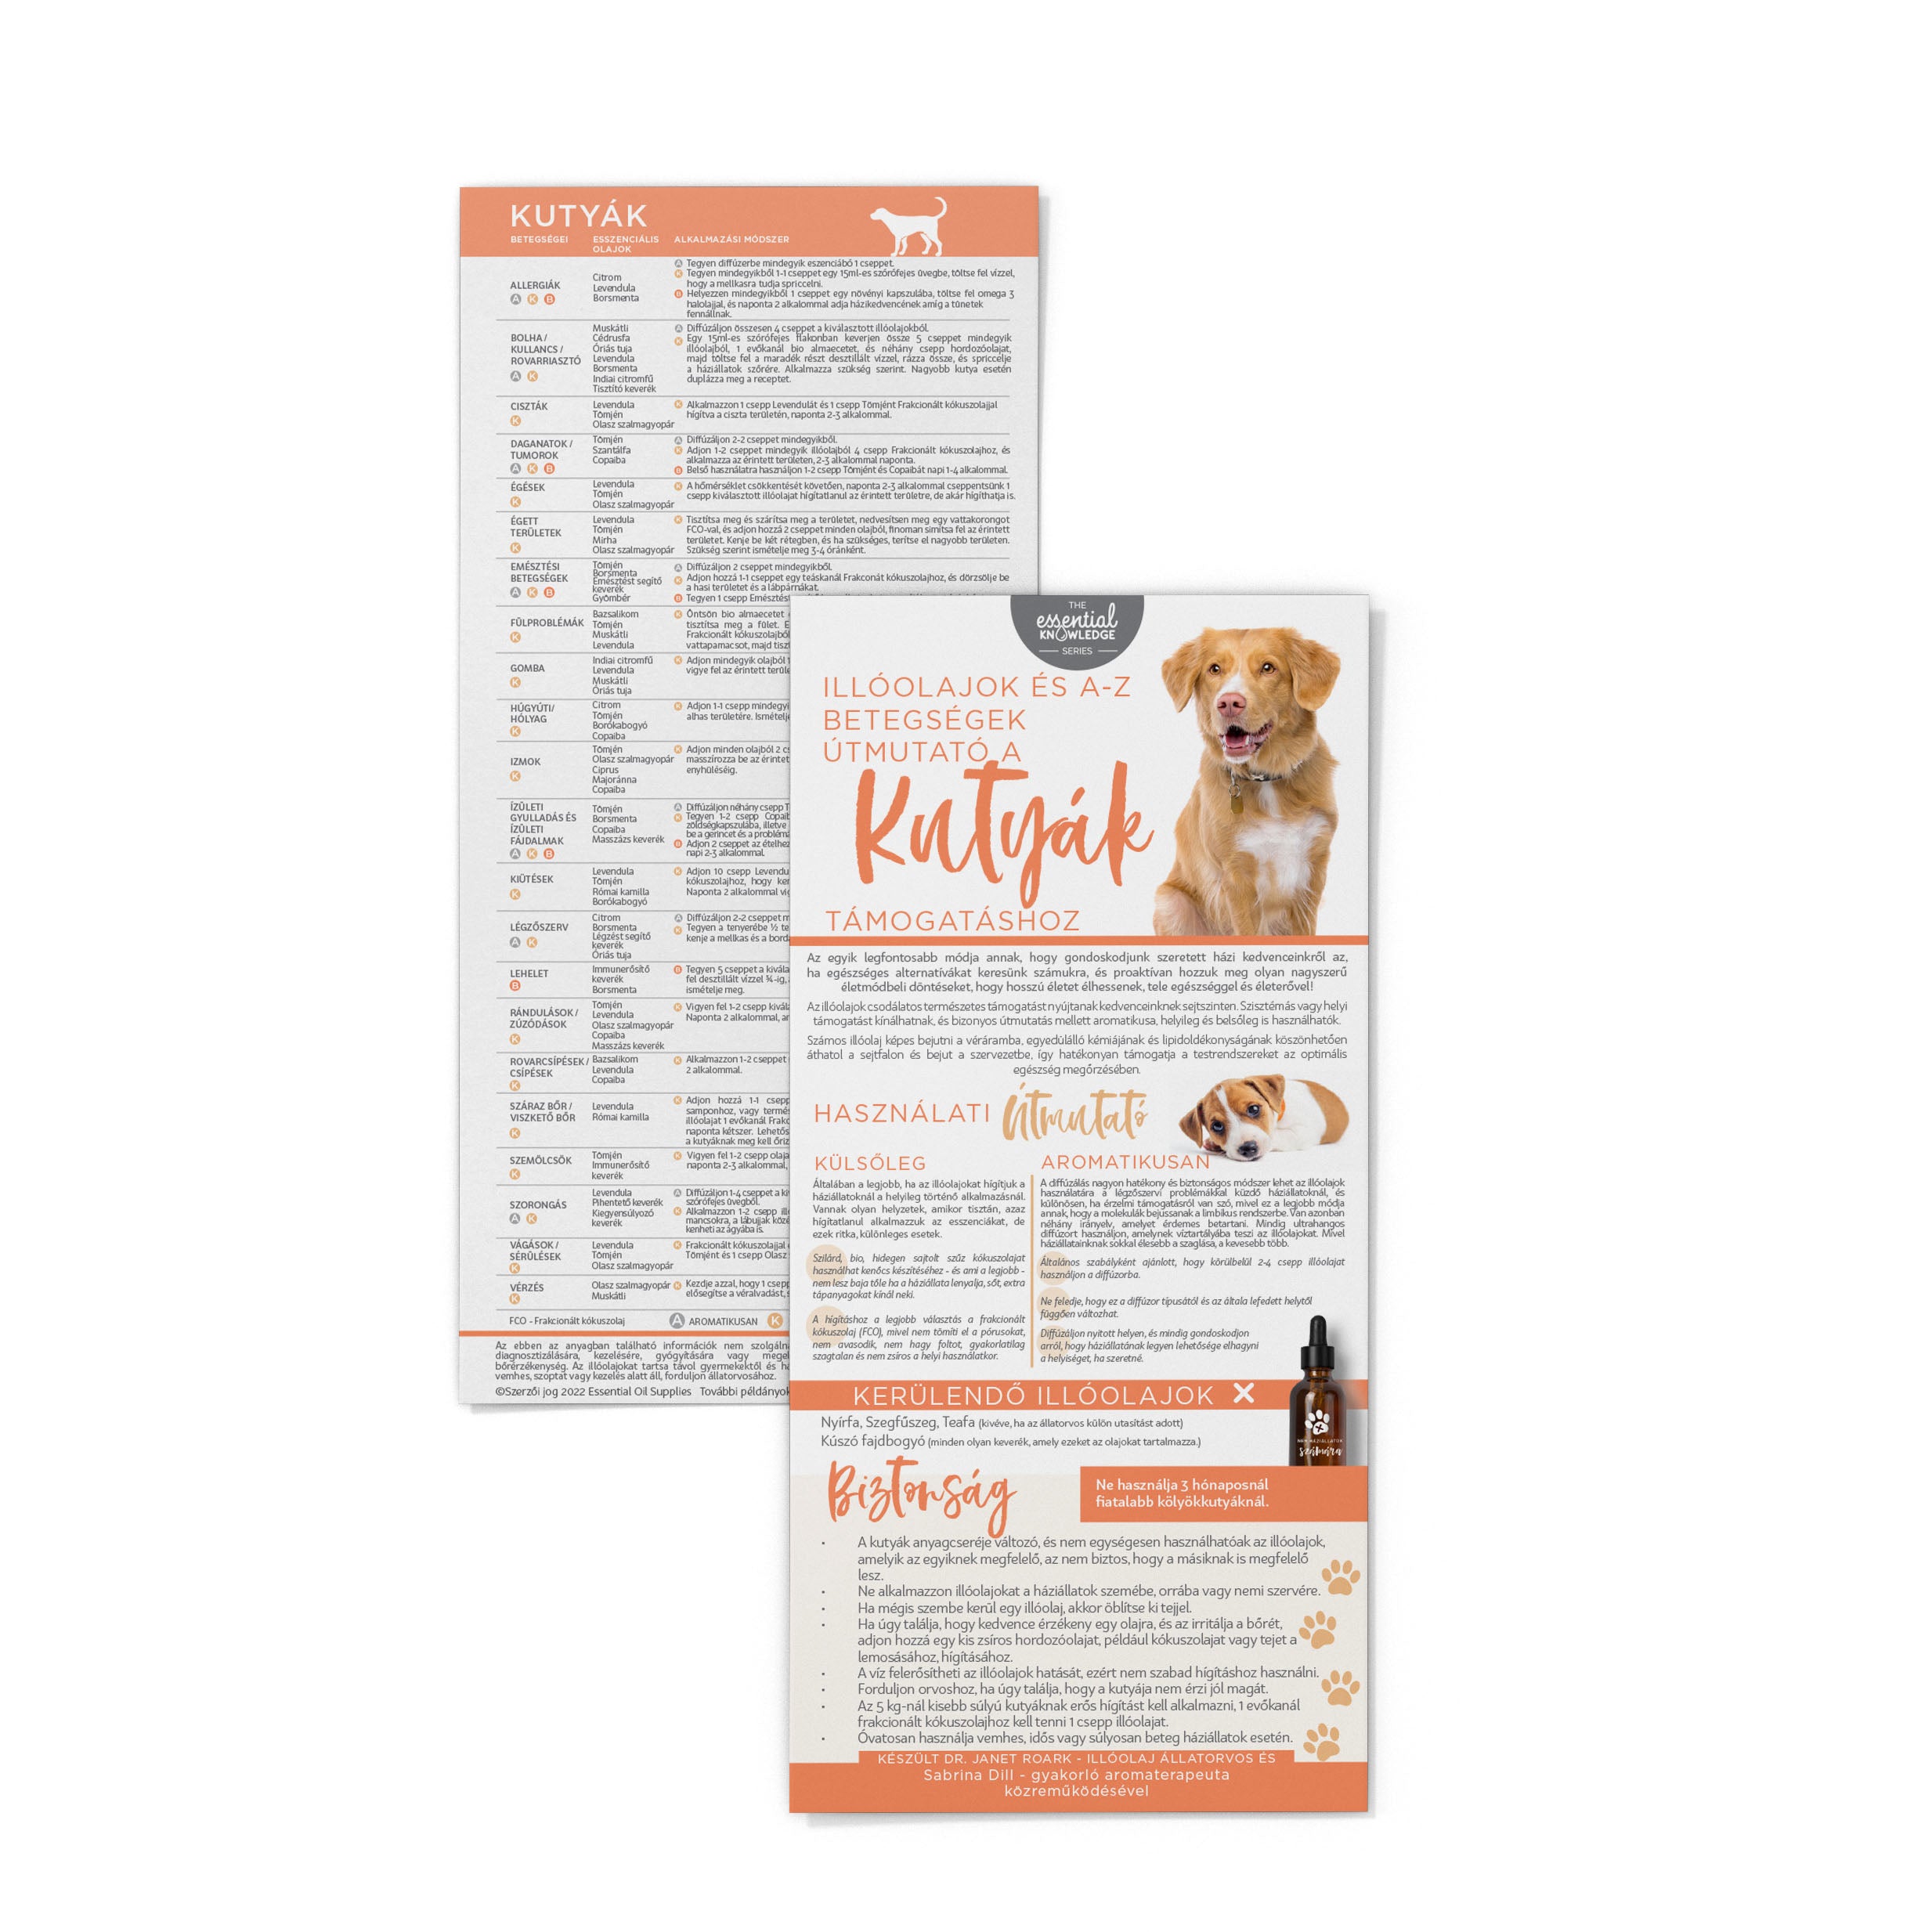 Információs Kártya - Illóolajok és A-Z betegségek útmutató Kutyáknak - MAGYAR NYELVŰ (2 oldalas) Essential Knowledge sorozat